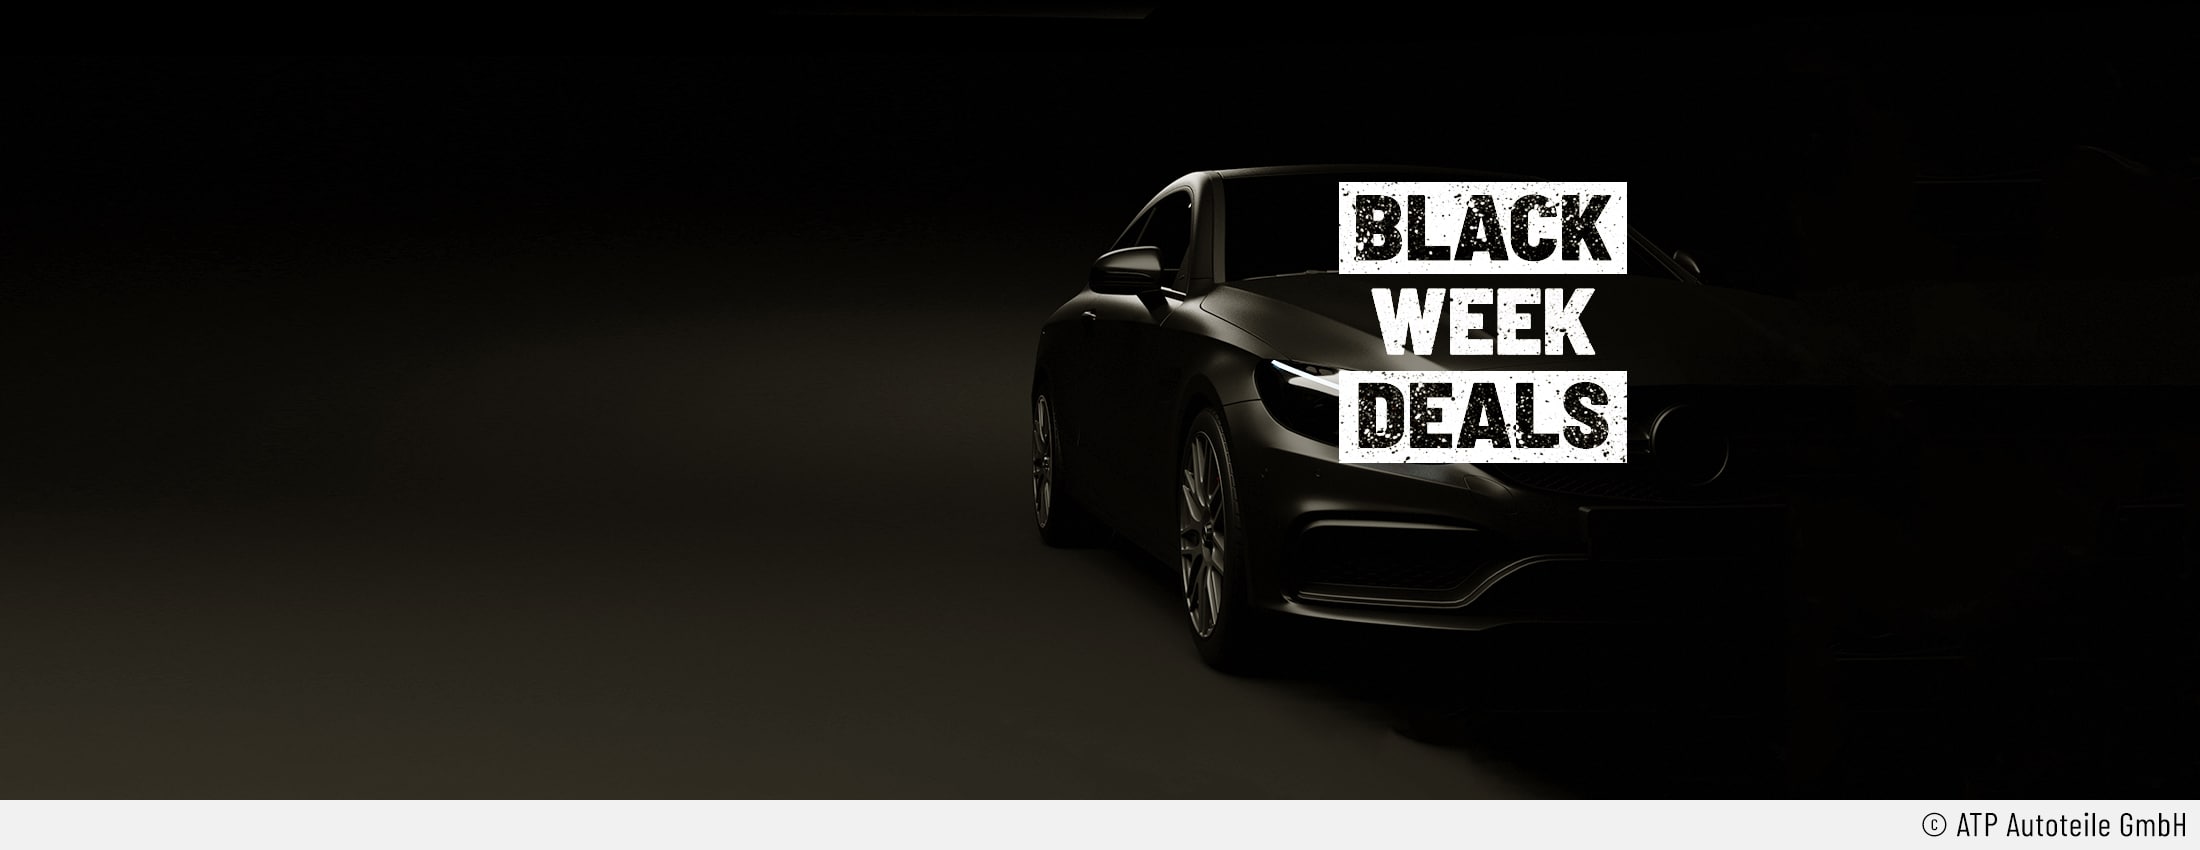 Der Bildhintergrund ist ganz schwarz. Rechts ist ein Luxus-Auto zu sehen, das leicht seitlich geparkt ist. Die rechte Seite des Fahrzeugs sticht aus dem Bild heraus. Auf dem Auto steht Black Week Deals in schwarzer Schrift vor grau-weißem steinigen Hintergrund.